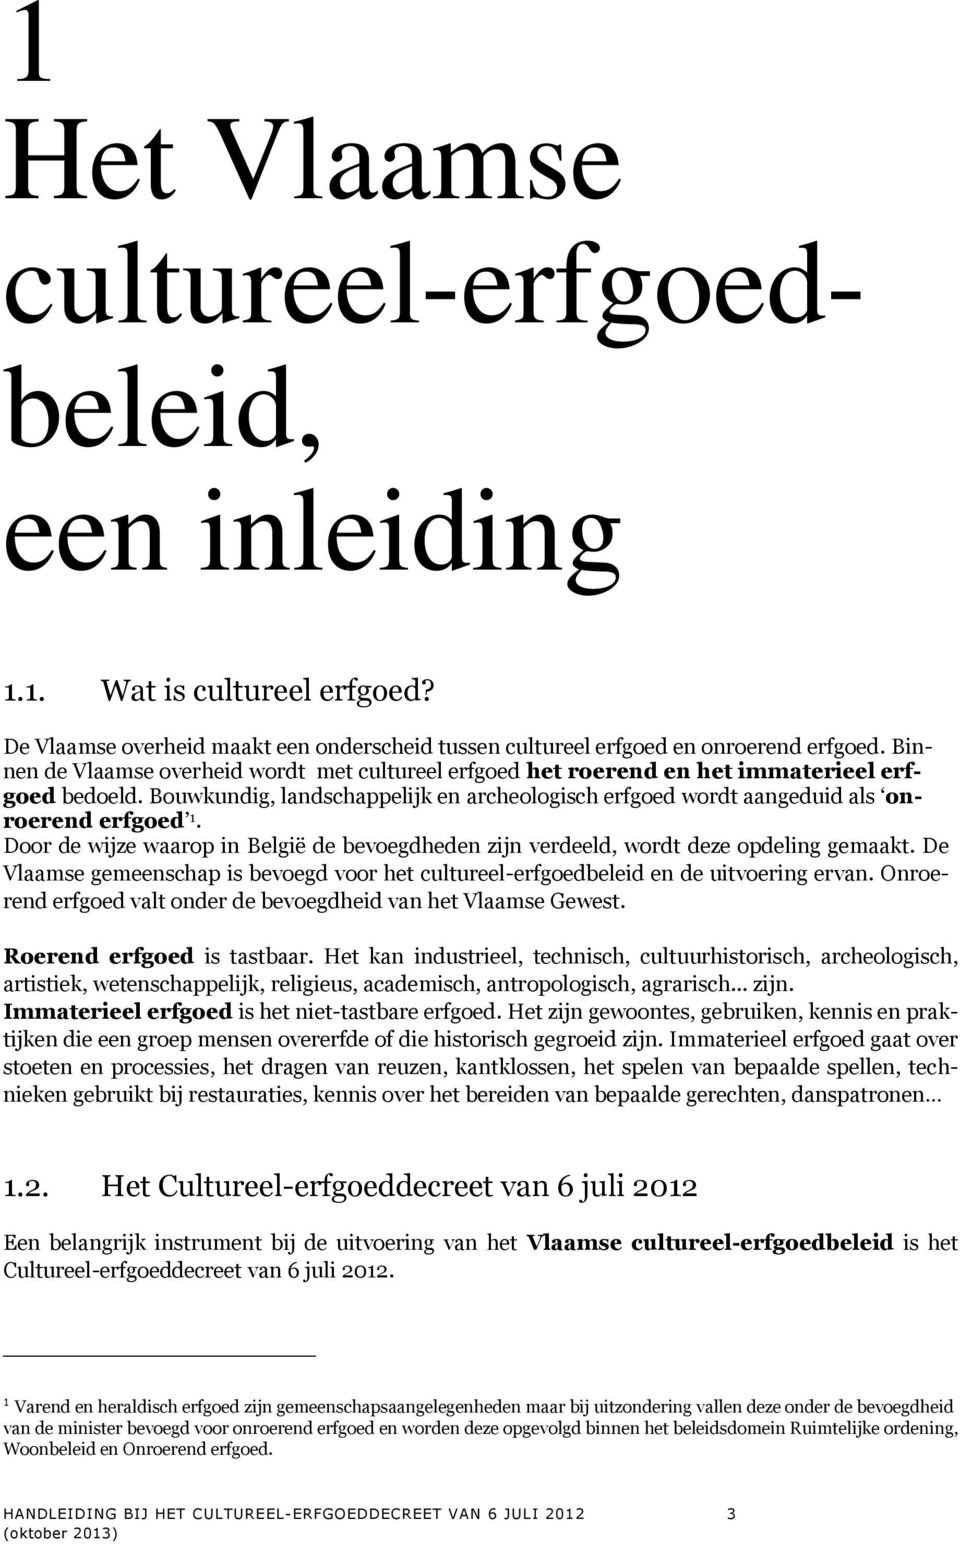 Door de wijze waarop in België de bevoegdheden zijn verdeeld, wordt deze opdeling gemaakt. De Vlaamse gemeenschap is bevoegd voor het cultureel-erfgoedbeleid en de uitvoering ervan.